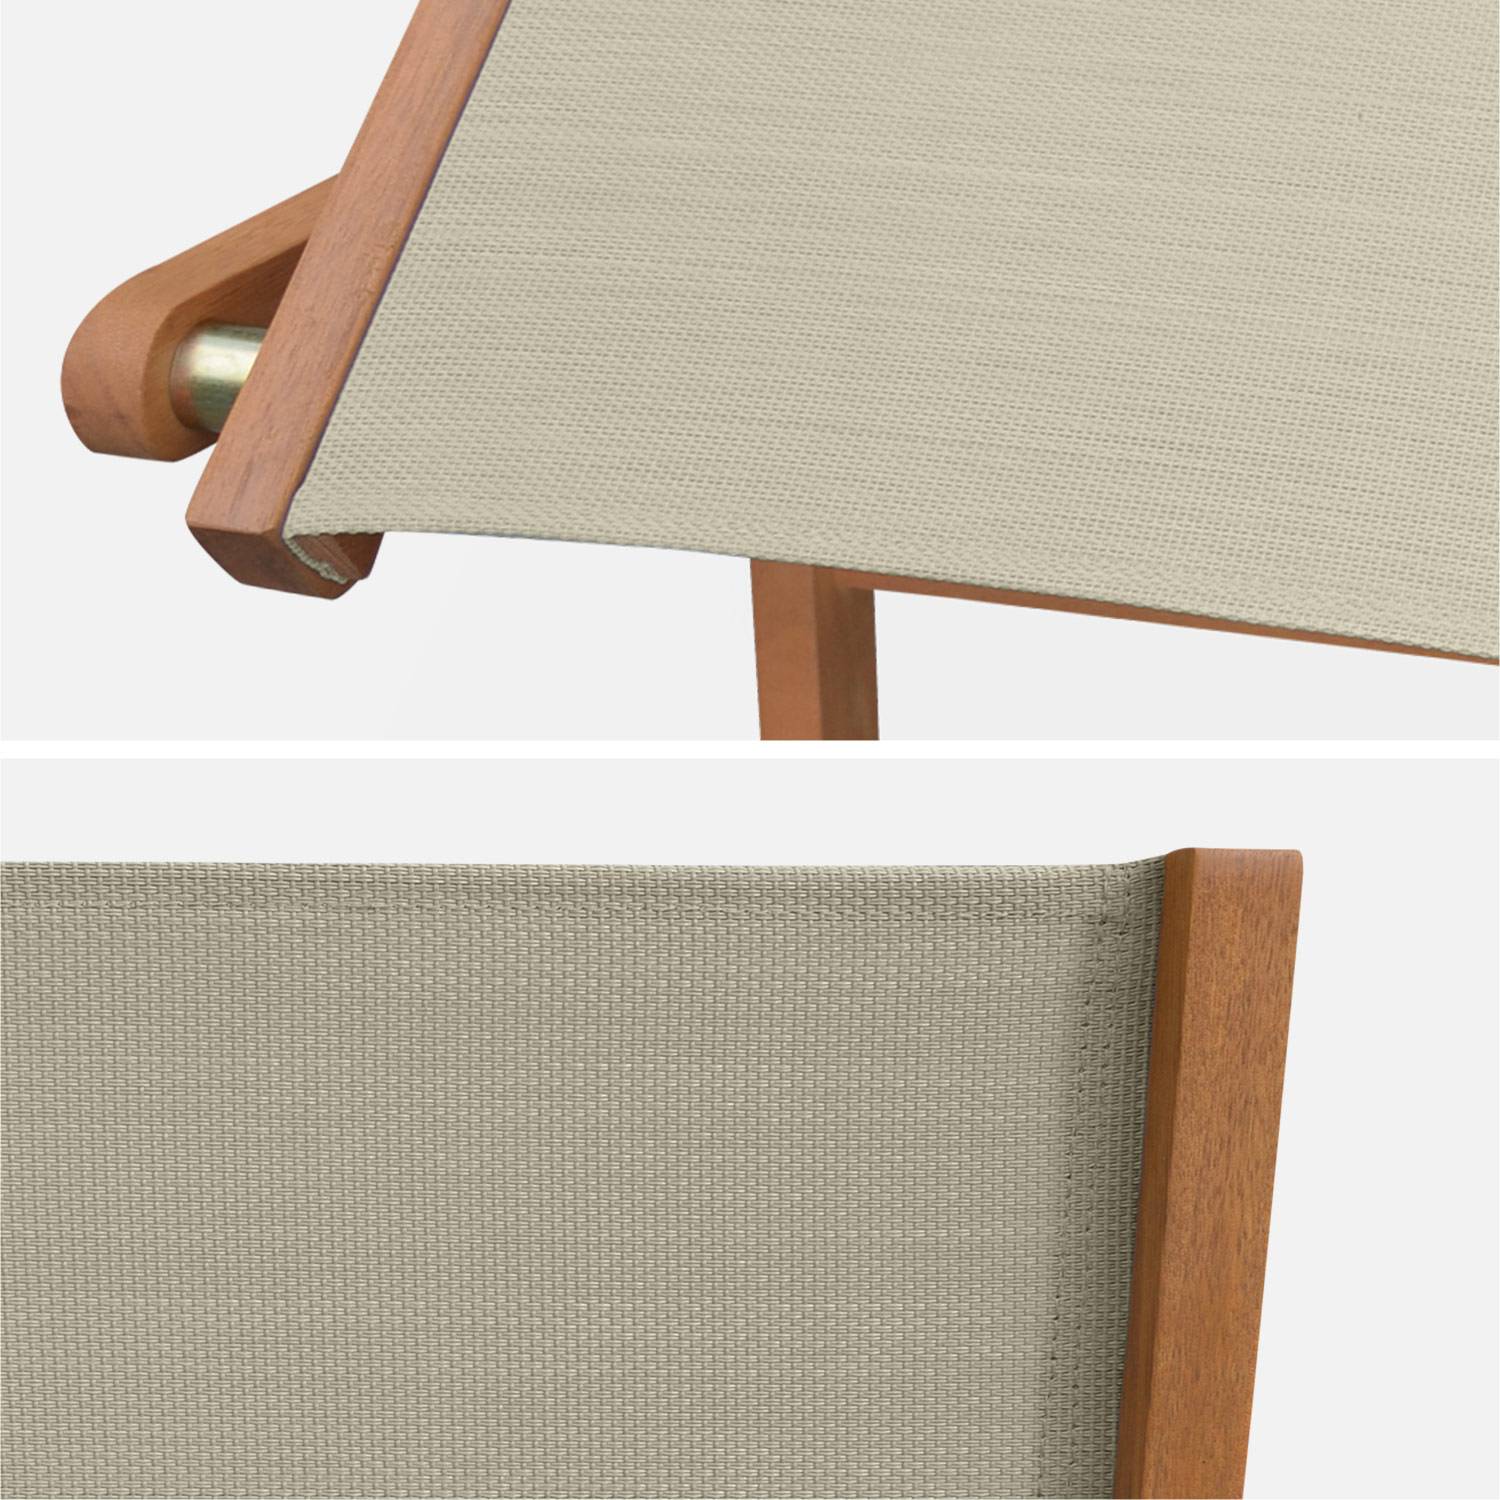 Gartenstühle aus Holz und Textilene - Almeria taupe-grau - 2 Klappstühle aus geöltem FSC Eukalyptusholz und Textilene Photo5